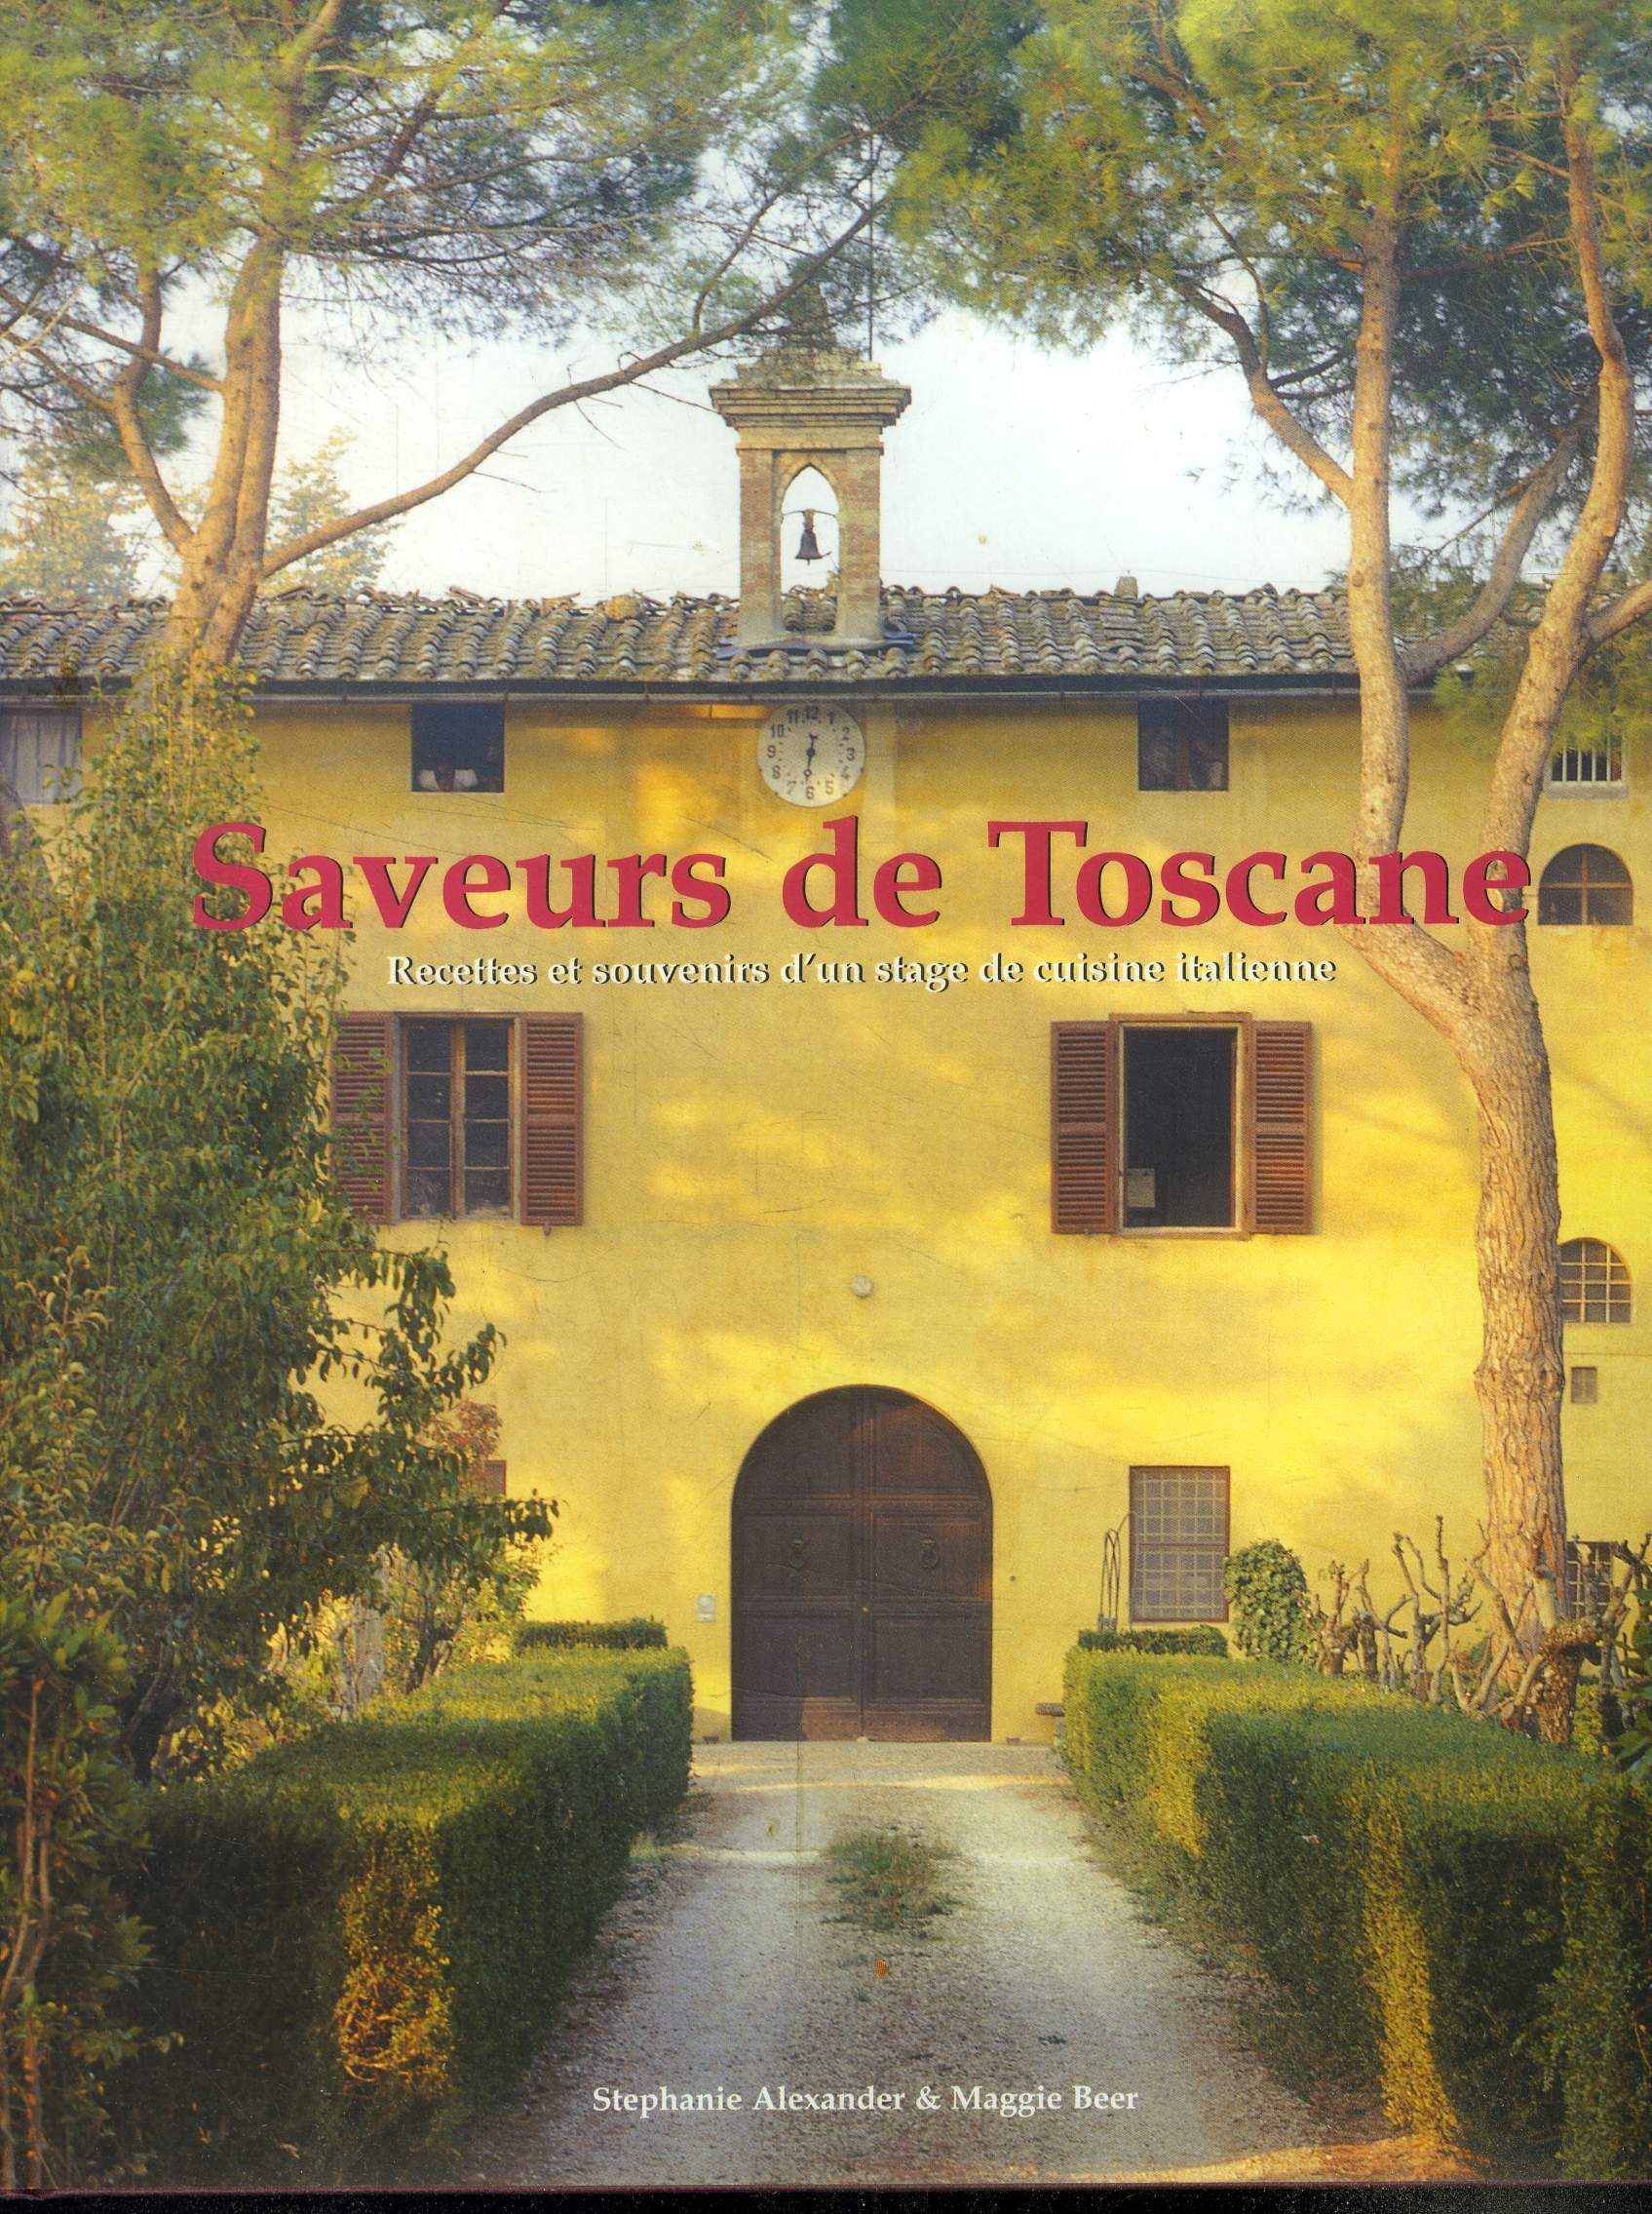 Saveurs de Toscane .Recettes et souvenirs d'un stage de cuisine italienne